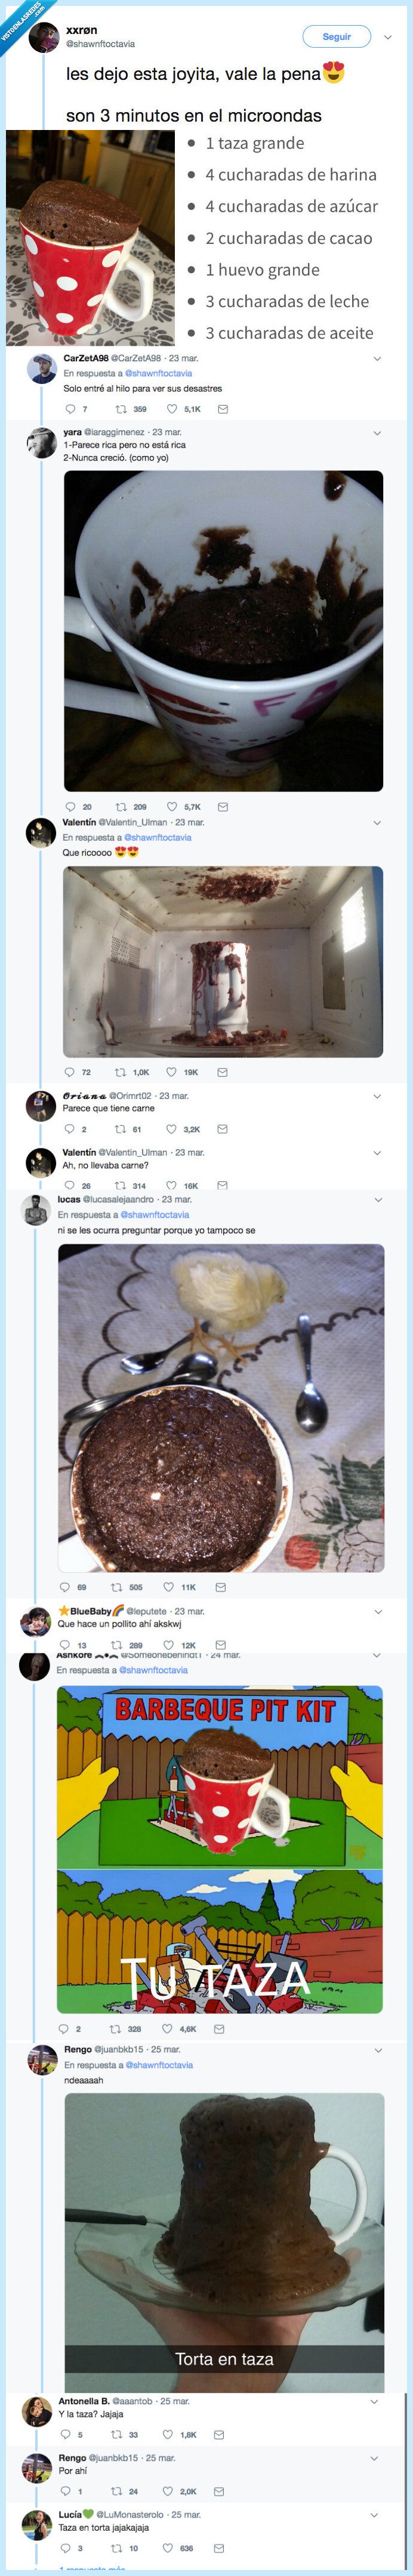 513260 - Brownie en el microondas: lo que parece una receta fácil acaba siendo un desastre para todo Twitter, por @shawnftoctavia